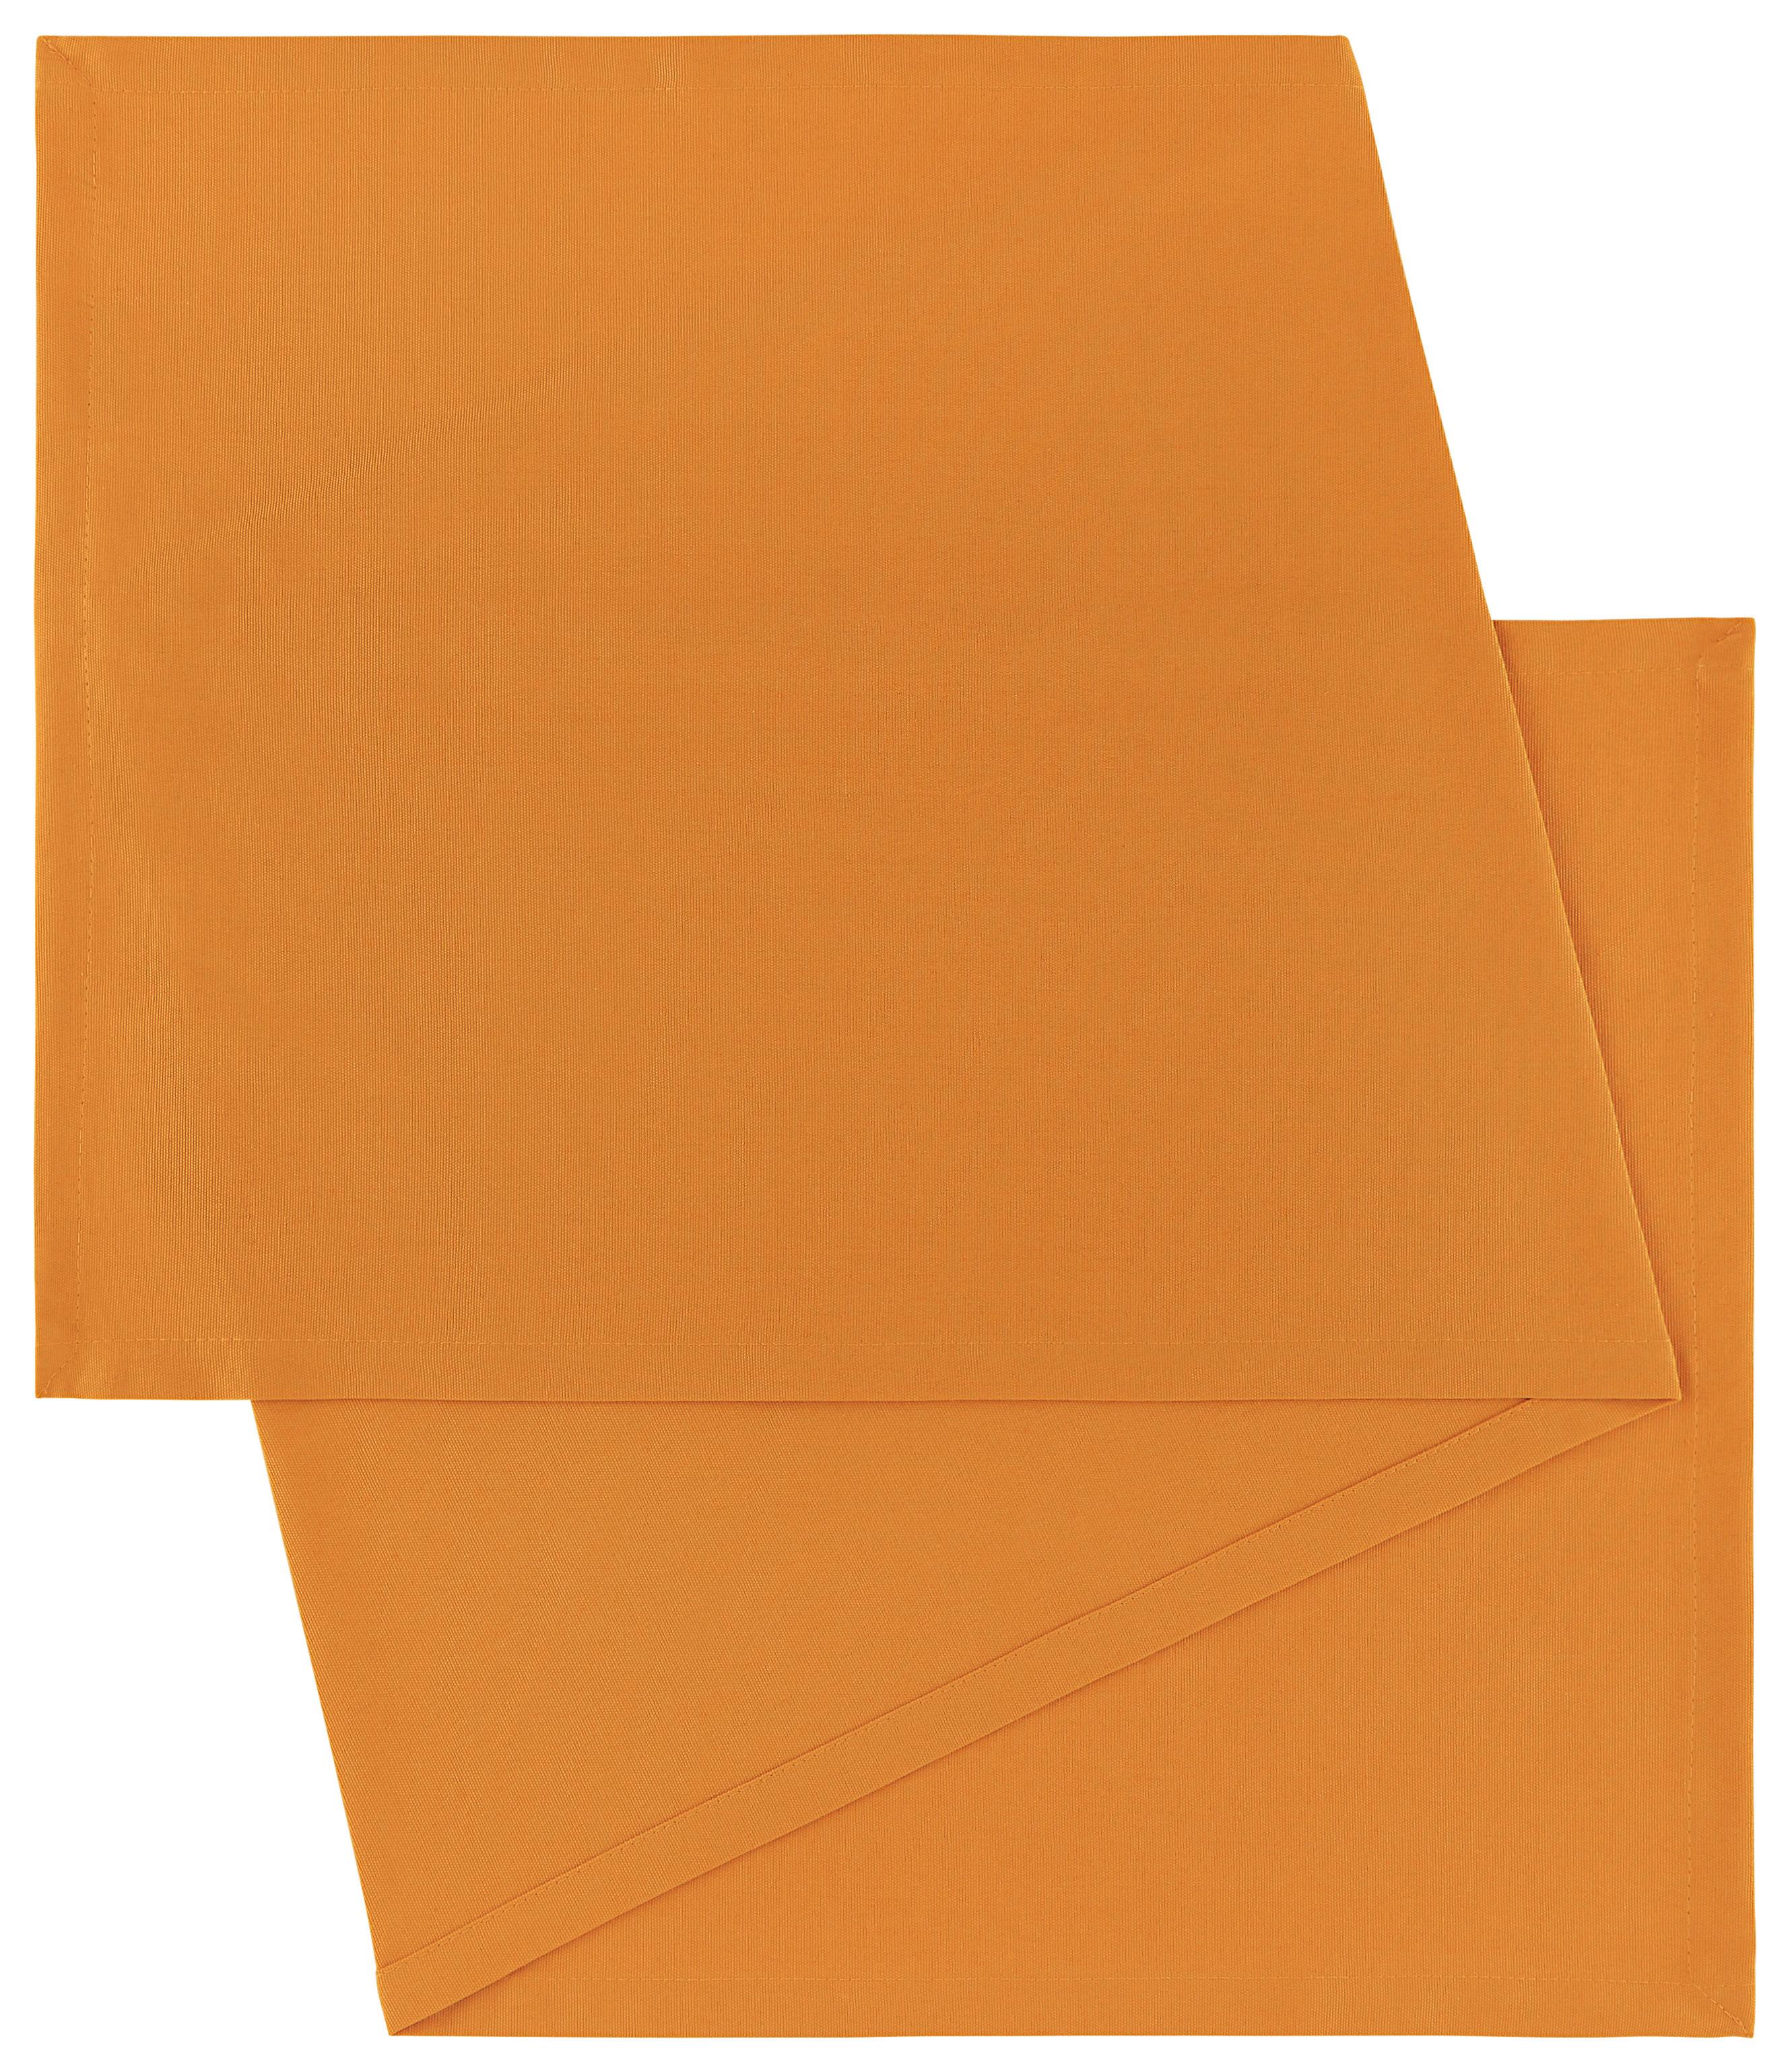 Nadprt Steffi - oranžna, tekstil (45/150cm) - Modern Living